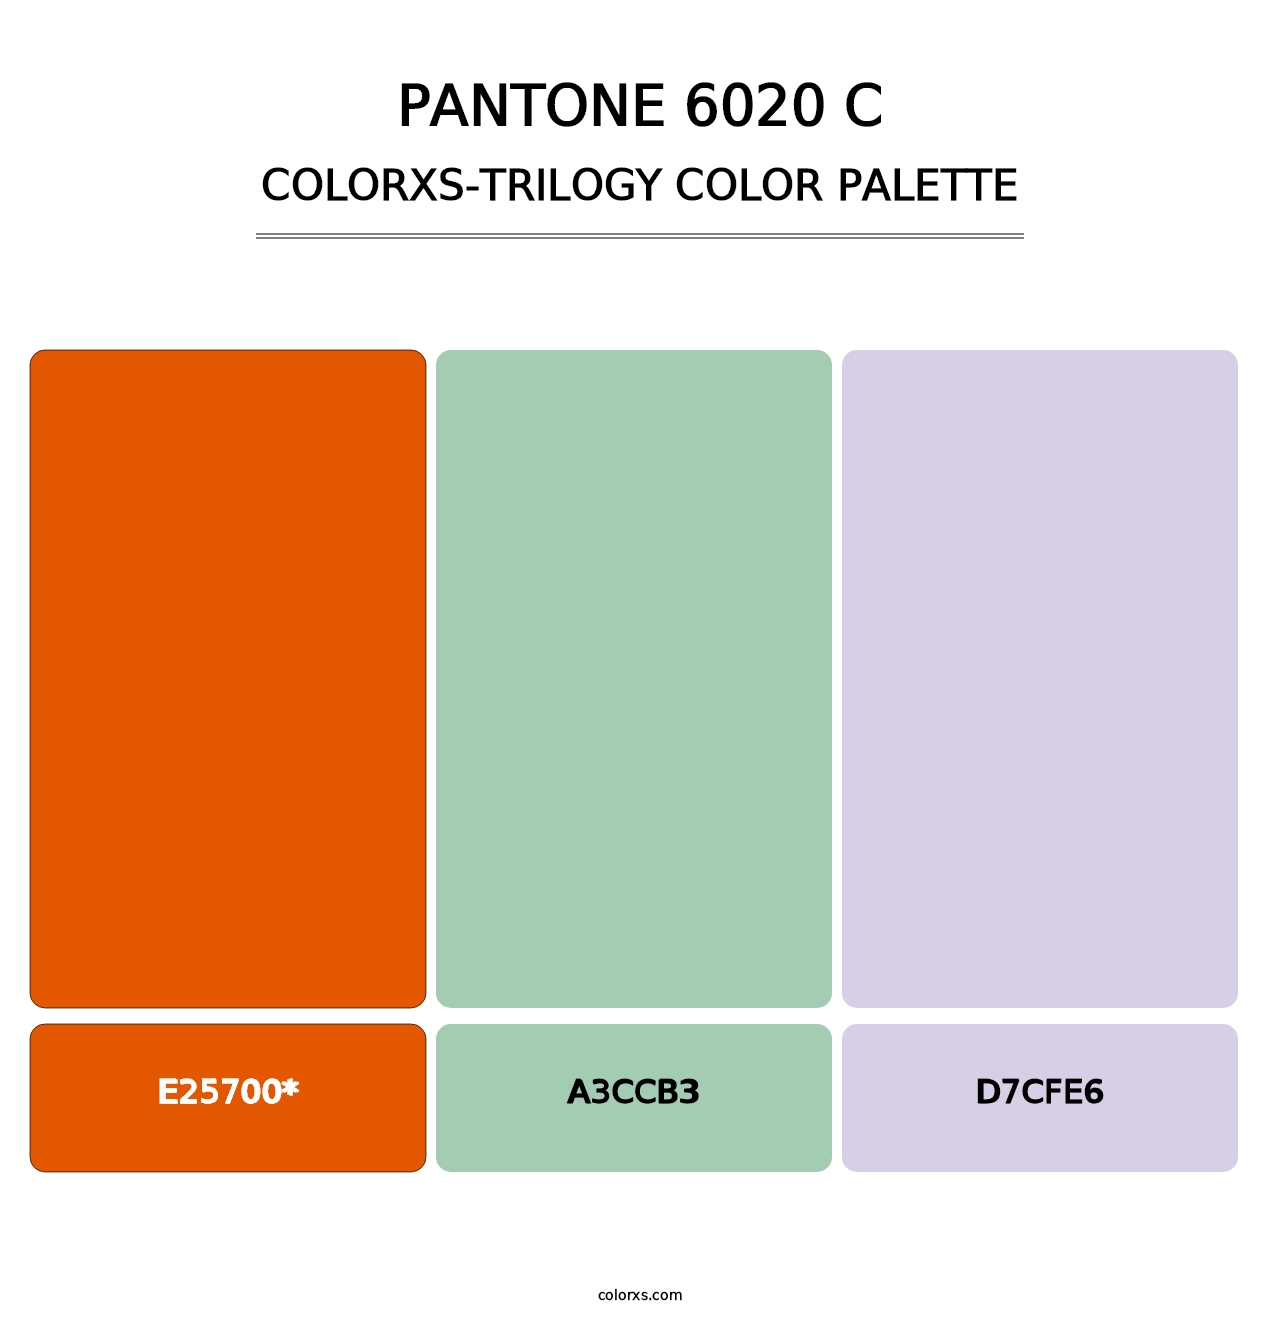 PANTONE 6020 C - Colorxs Trilogy Palette